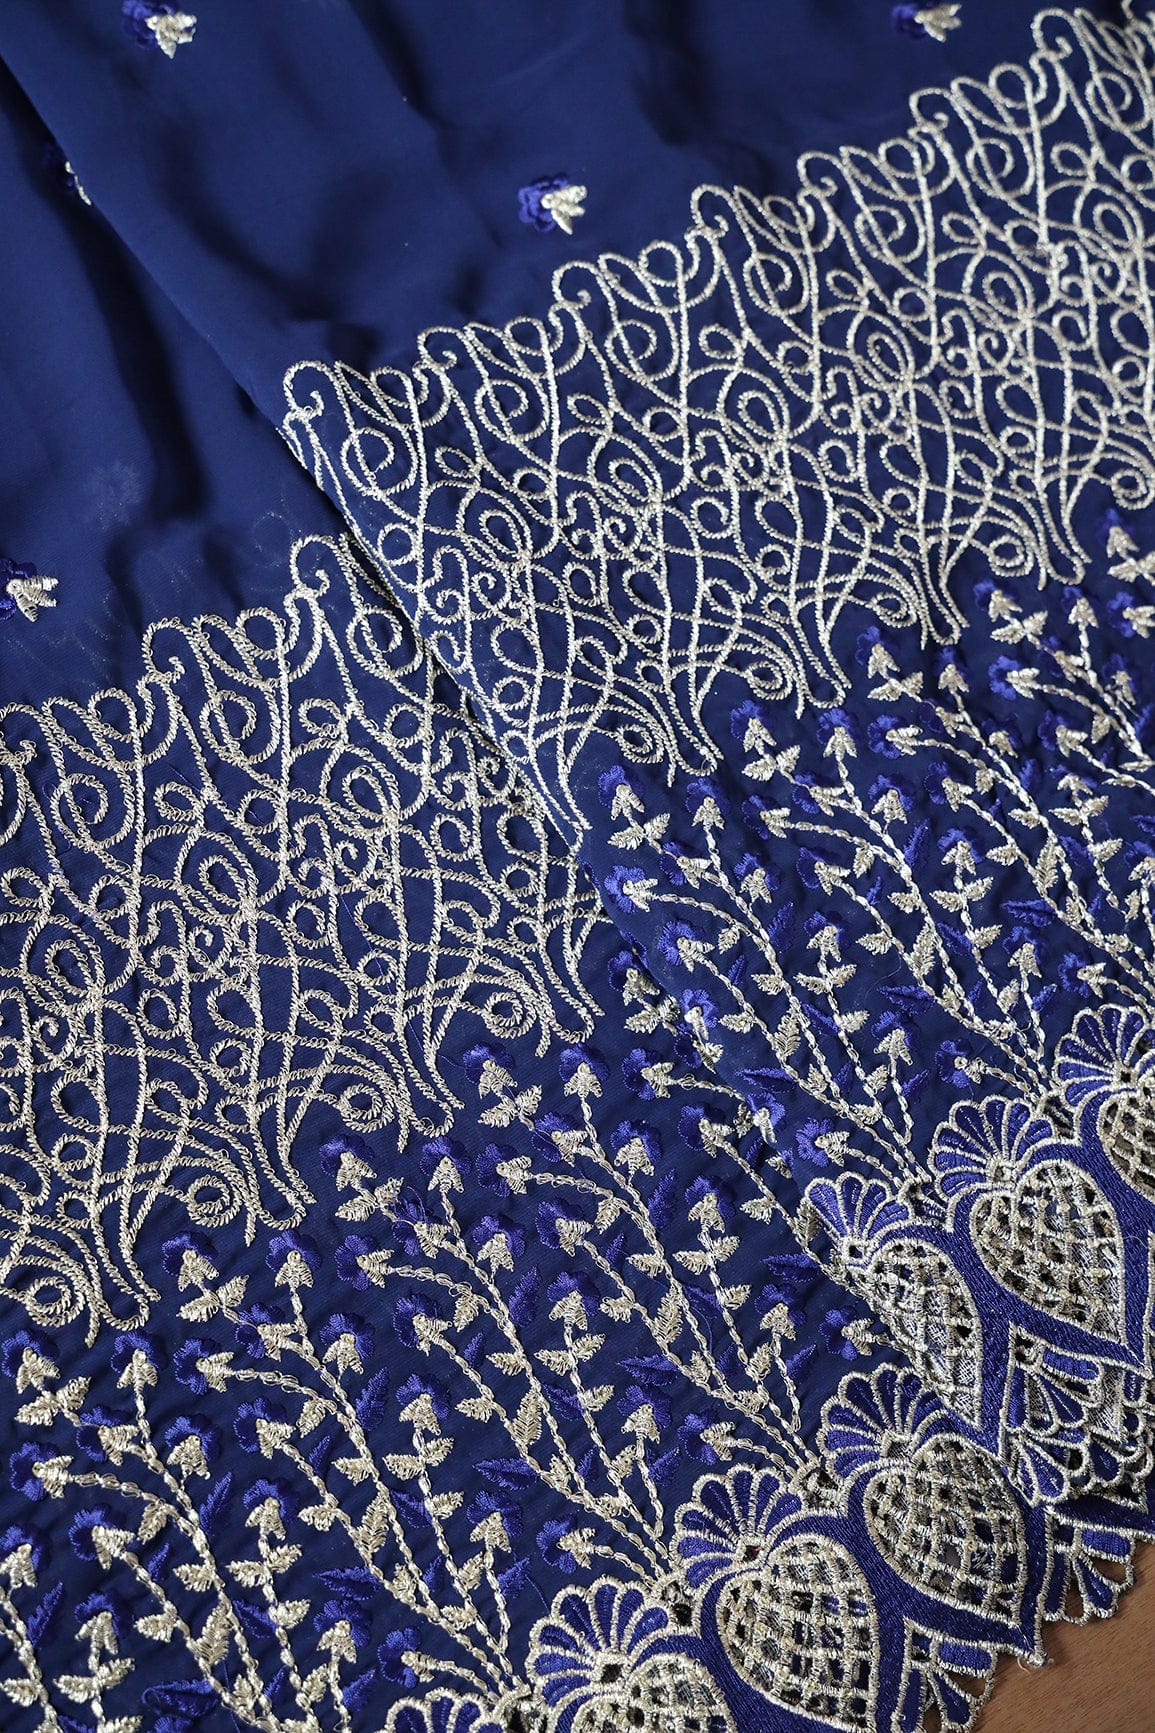 doeraa LEHENGA SET Navy Blue And Light Grey Unstitched Lehenga Set Fabric (3 Piece)